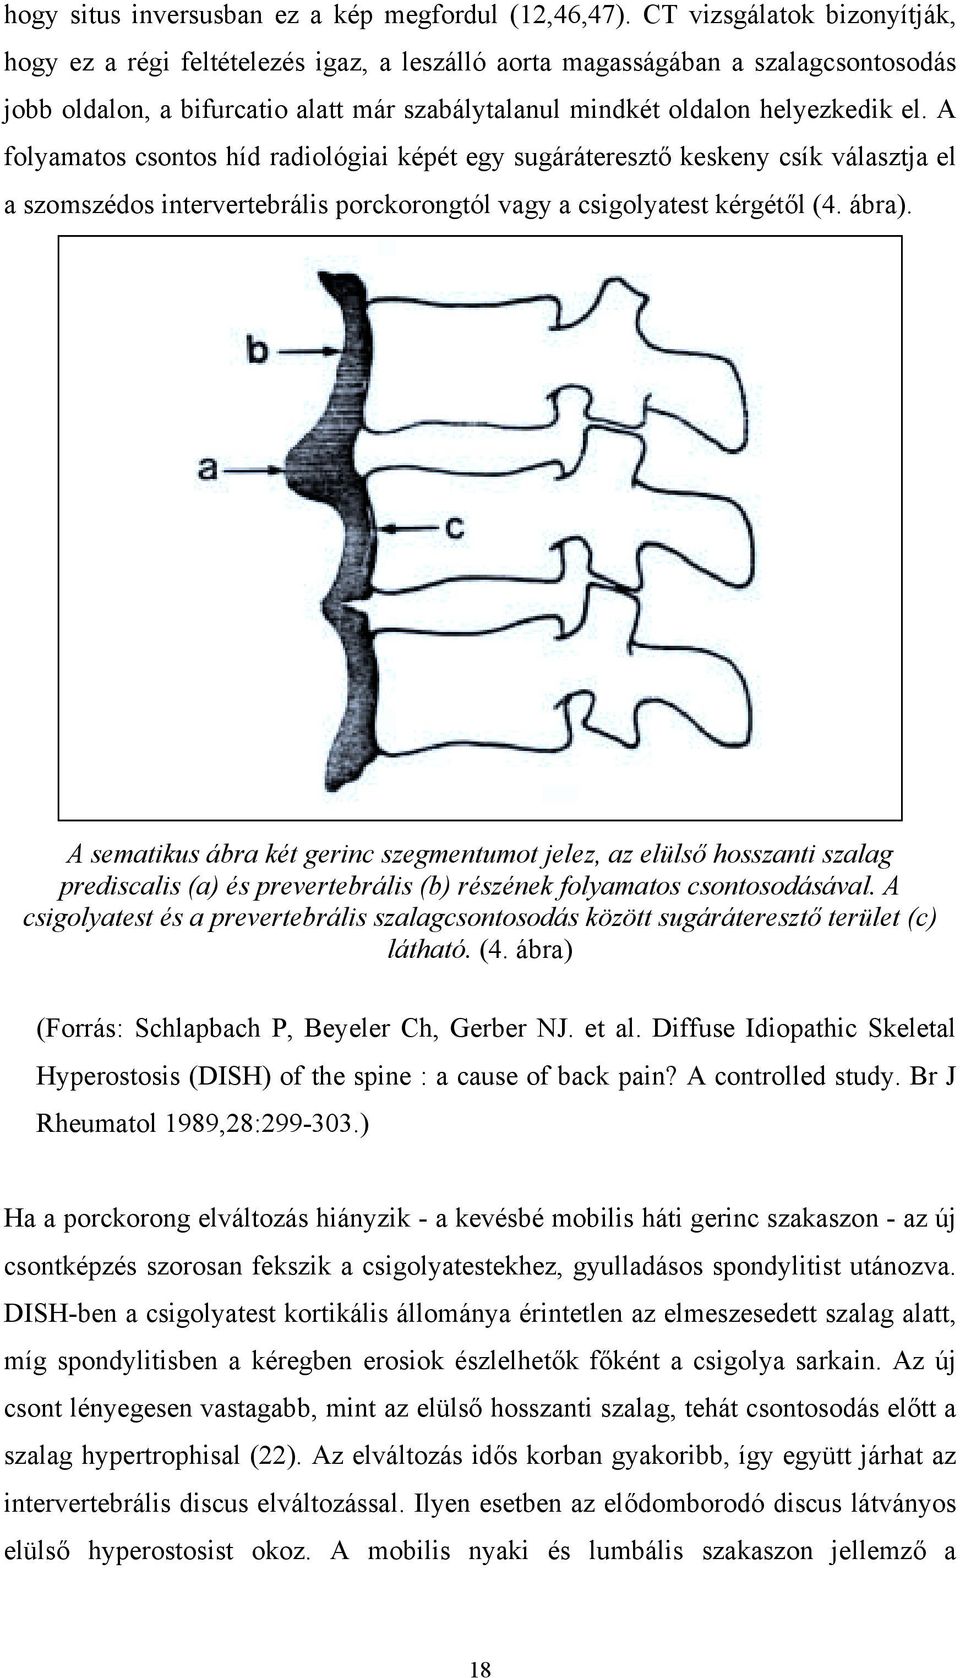 A folyamatos csontos híd radiológiai képét egy sugáráteresztő keskeny csík választja el a szomszédos intervertebrális porckorongtól vagy a csigolyatest kérgétől (4. ábra).